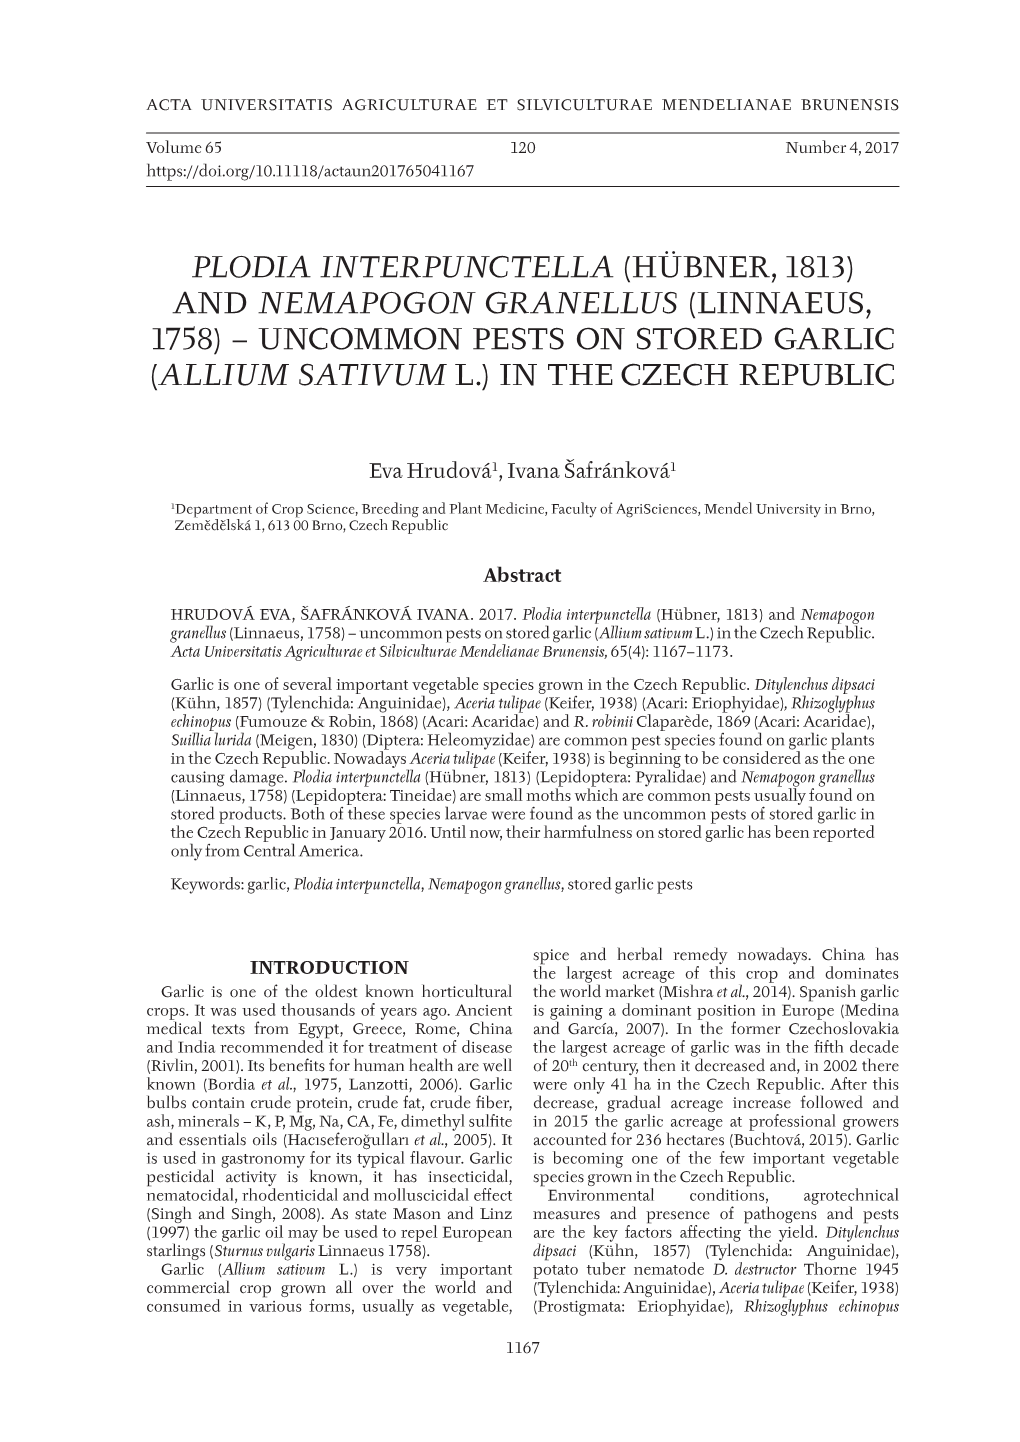 Plodia Interpunctella (Hübner, 1813) and Nemapogon Granellus (Linnaeus, 1758) – Uncommon Pests on Stored Garlic (Allium Sativum L.) in the Czech Republic